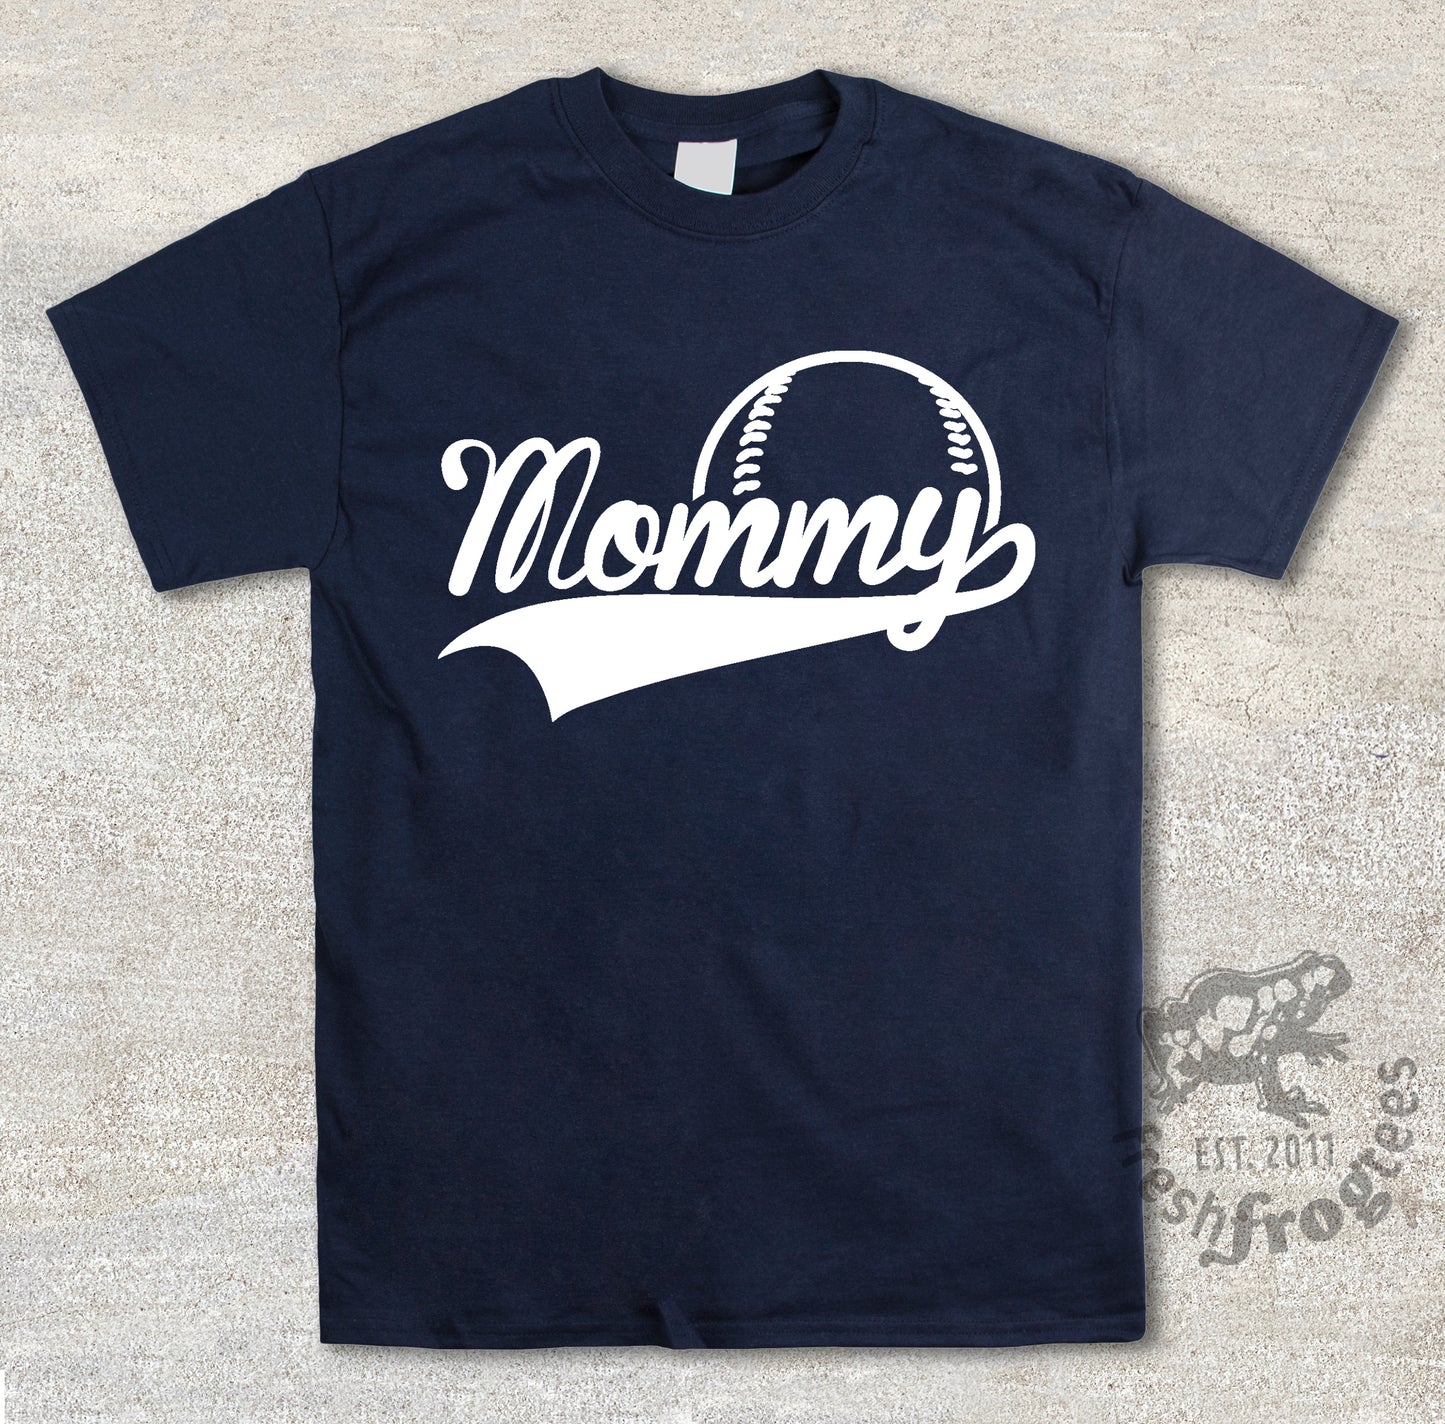 Mommy swoosh baseball jersey style shirt